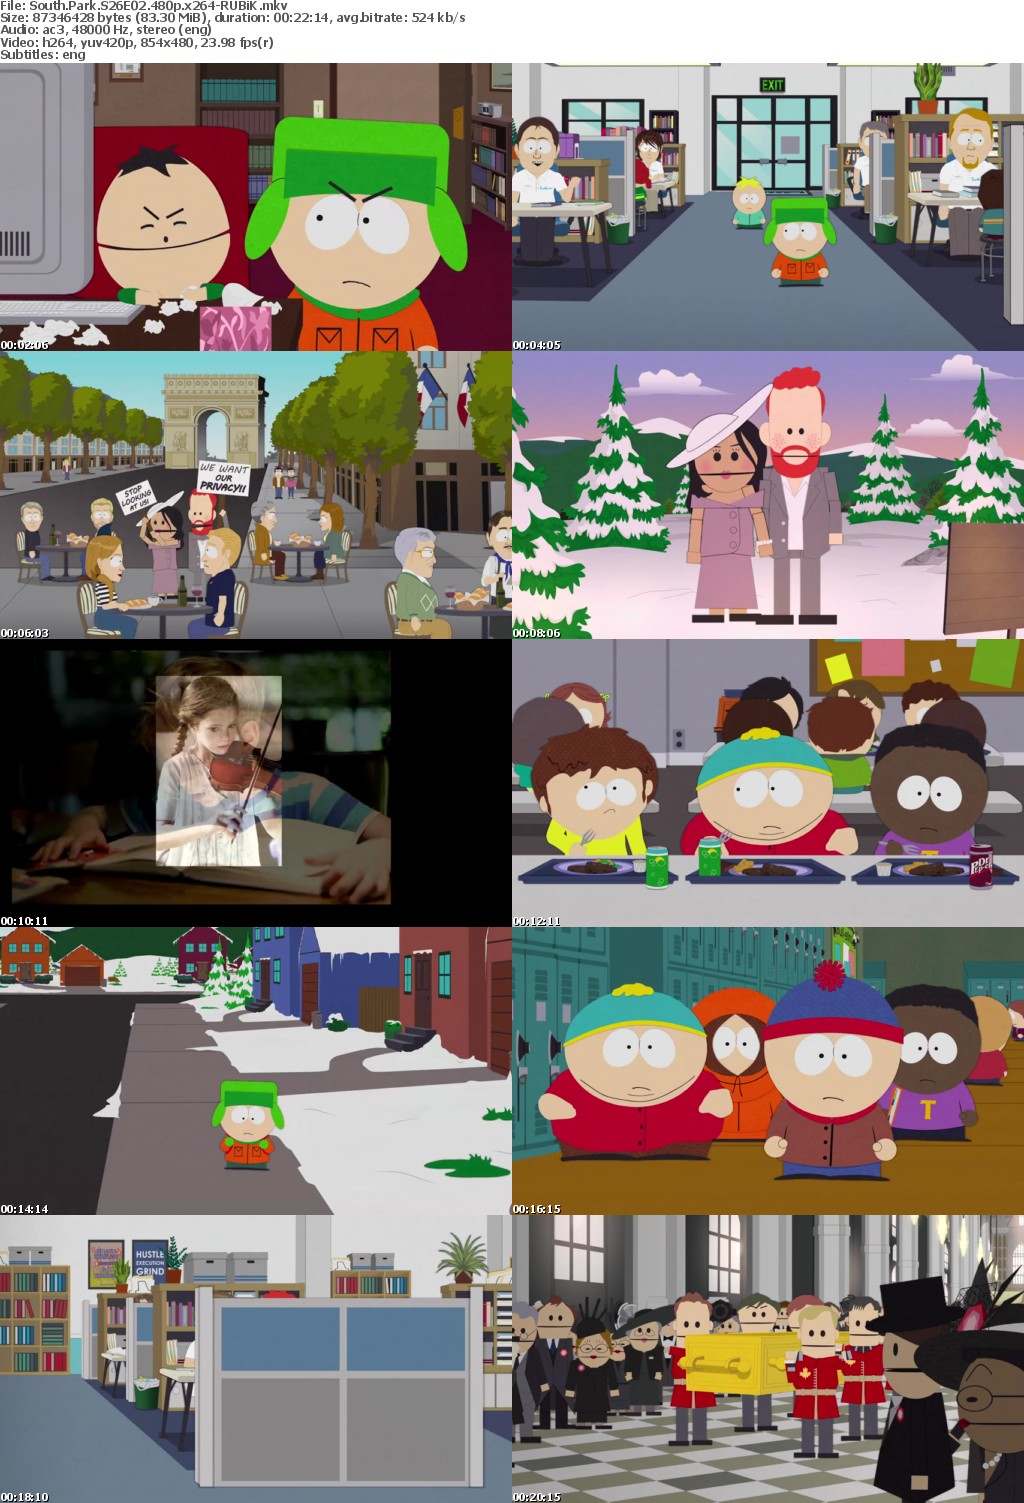 South Park S26E02 480p x264-RUBiK